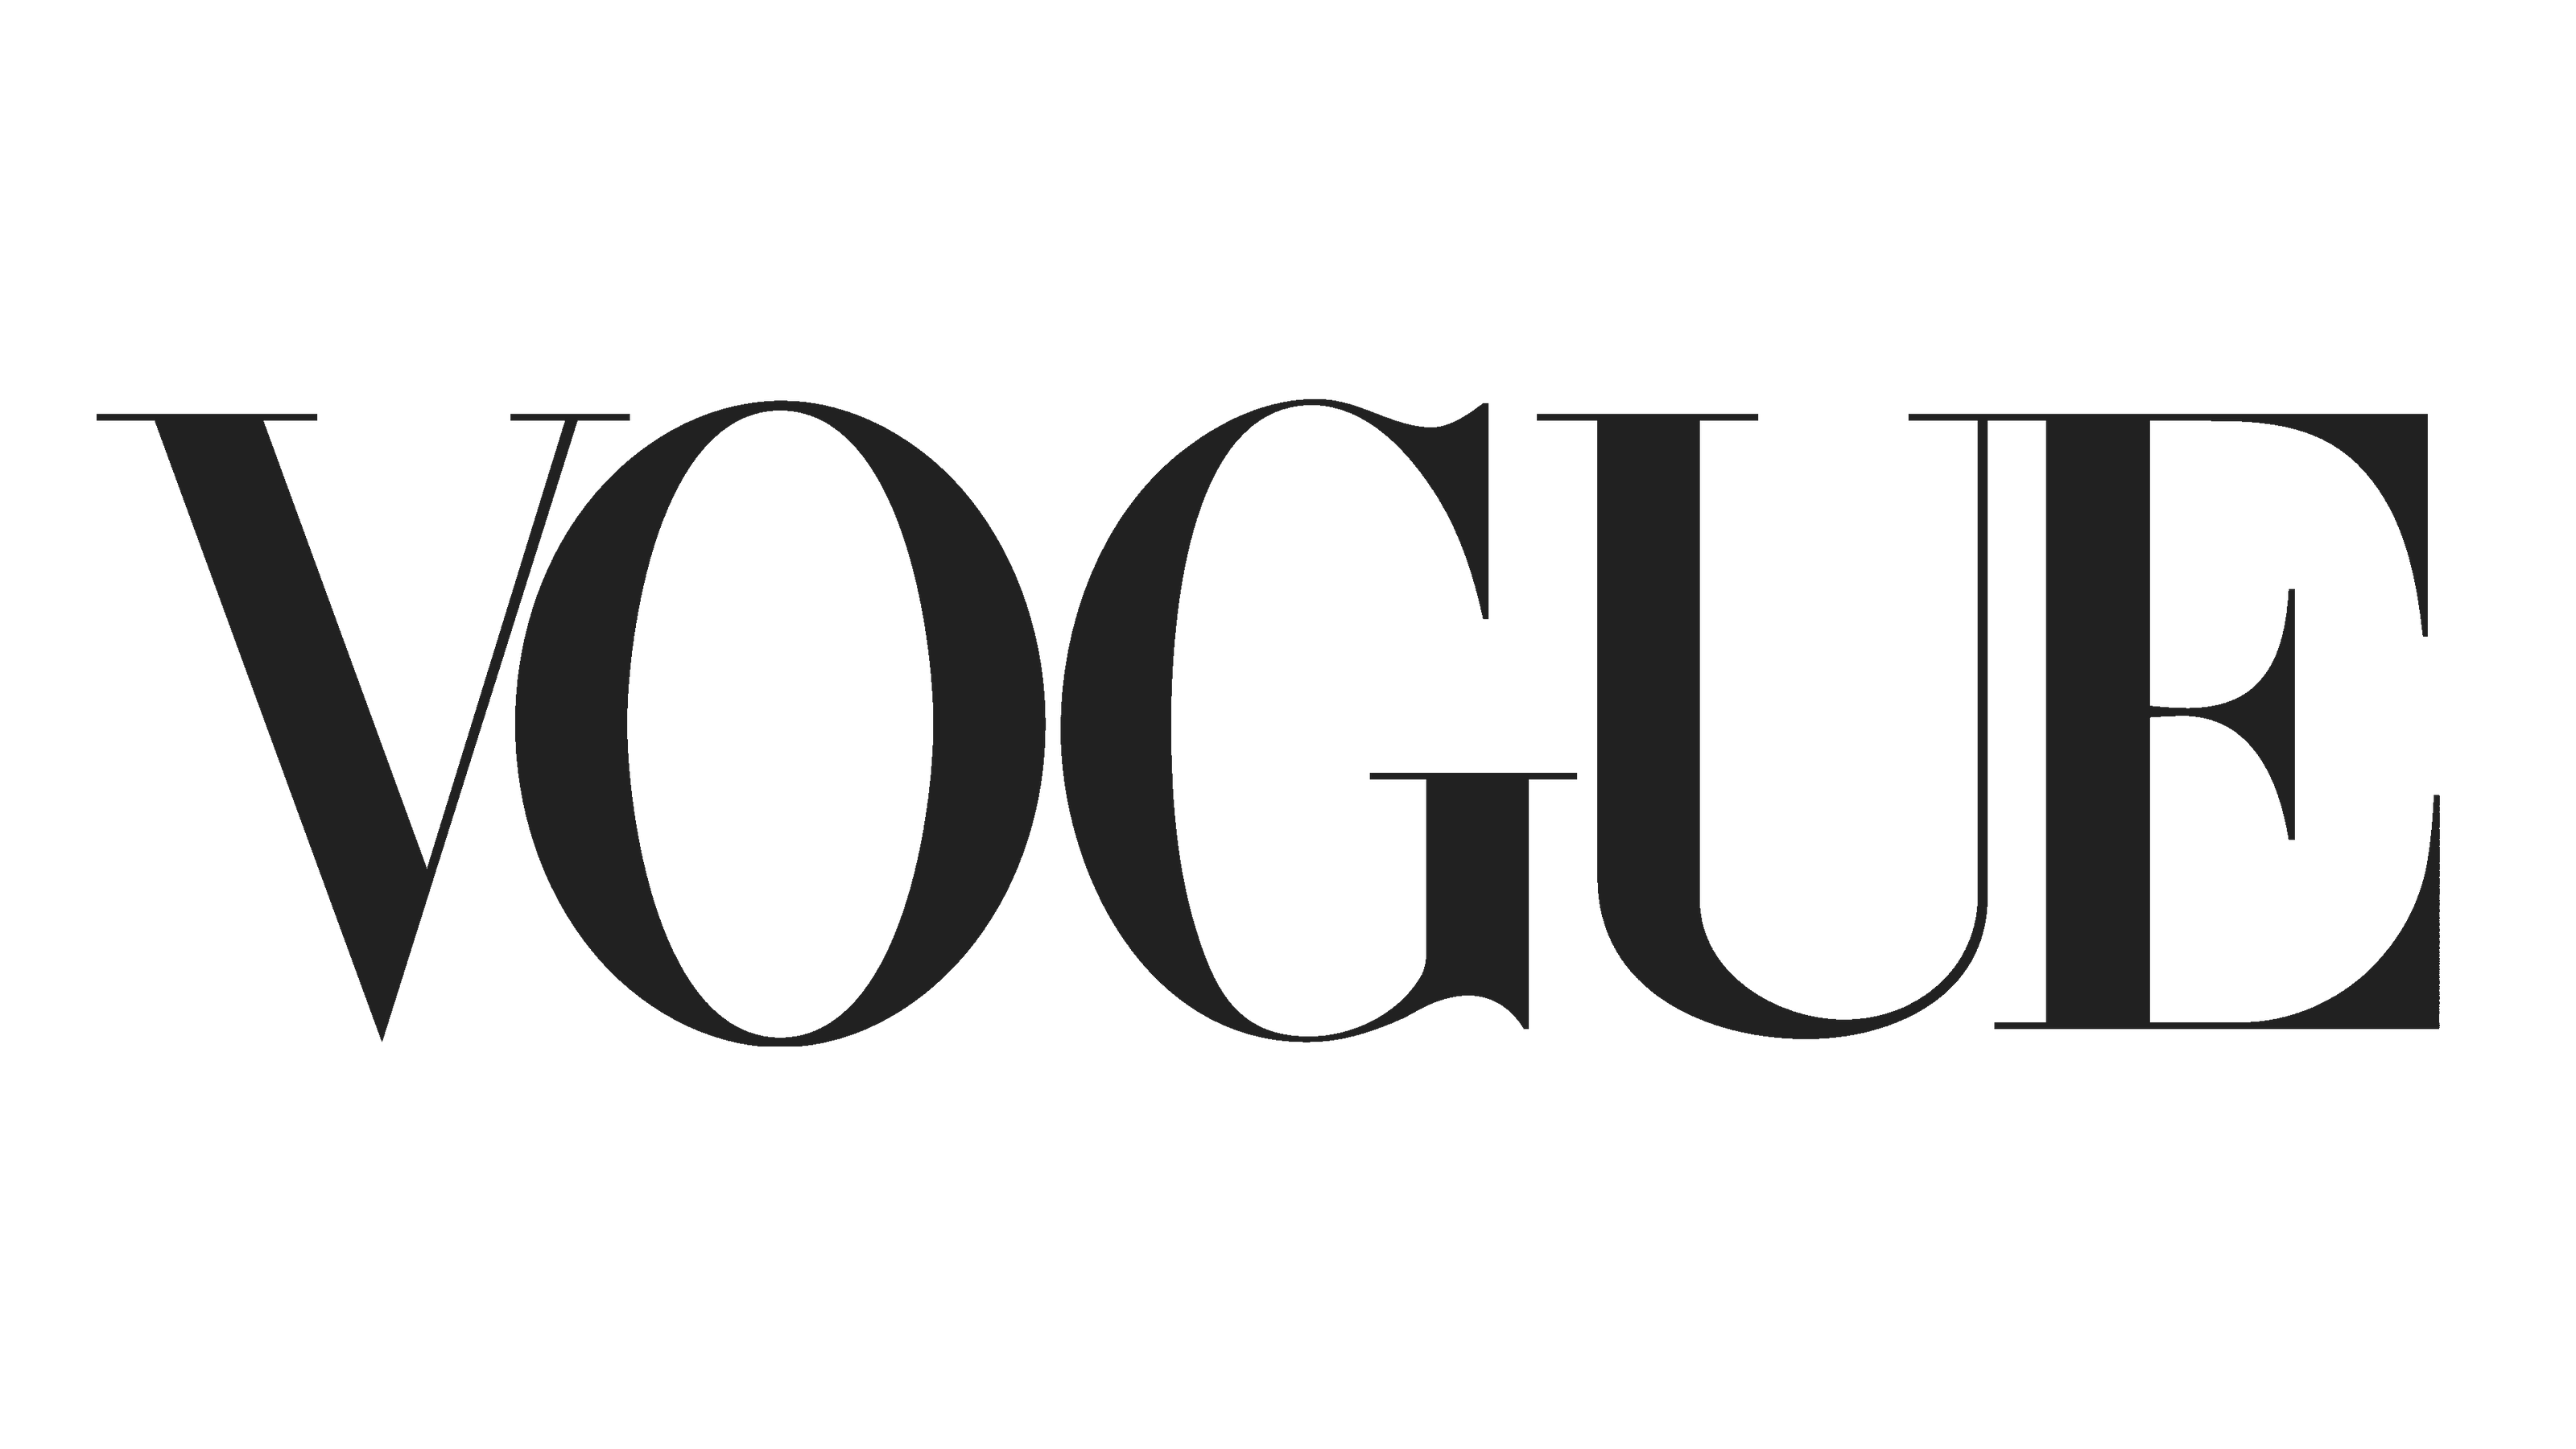 Vogue Magazine Logo Sustainable eco friendly homewares & gift shop Glasgow Scotland UK